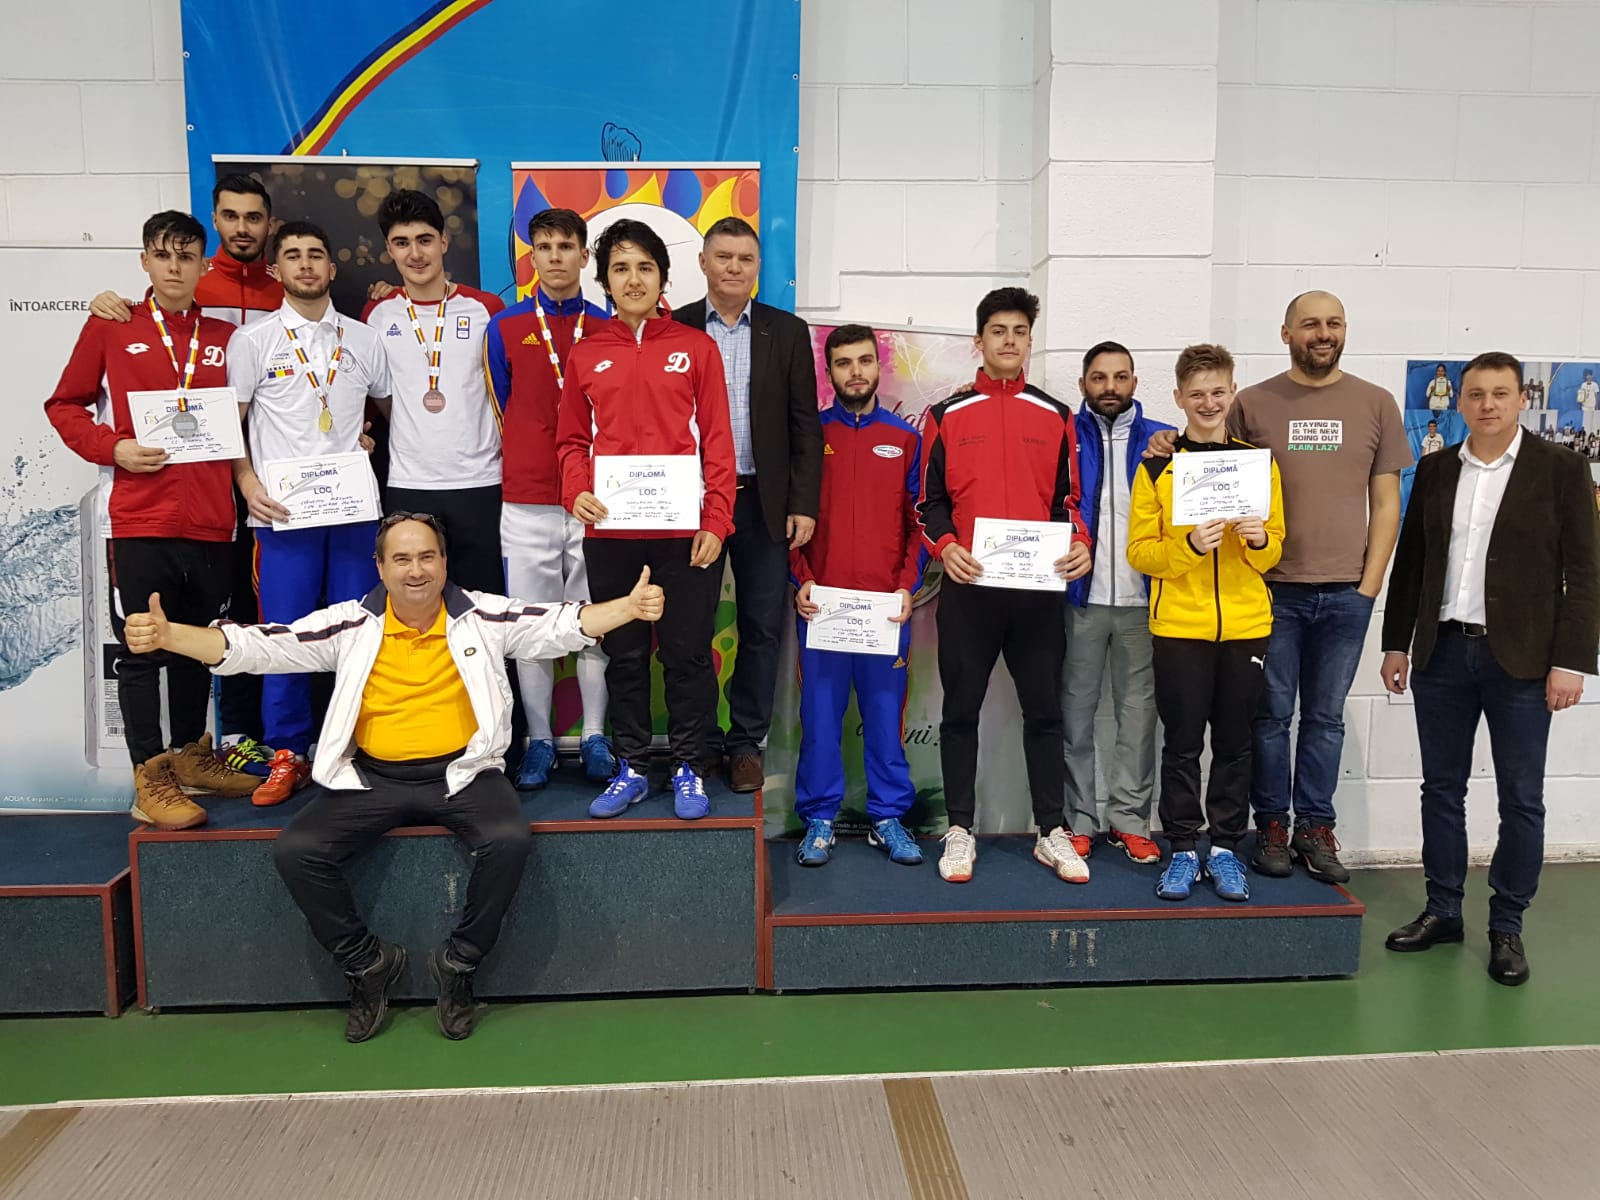 Campionatul Național 2019,  juniori, sabie masculin – Sala Ana Pascu, București